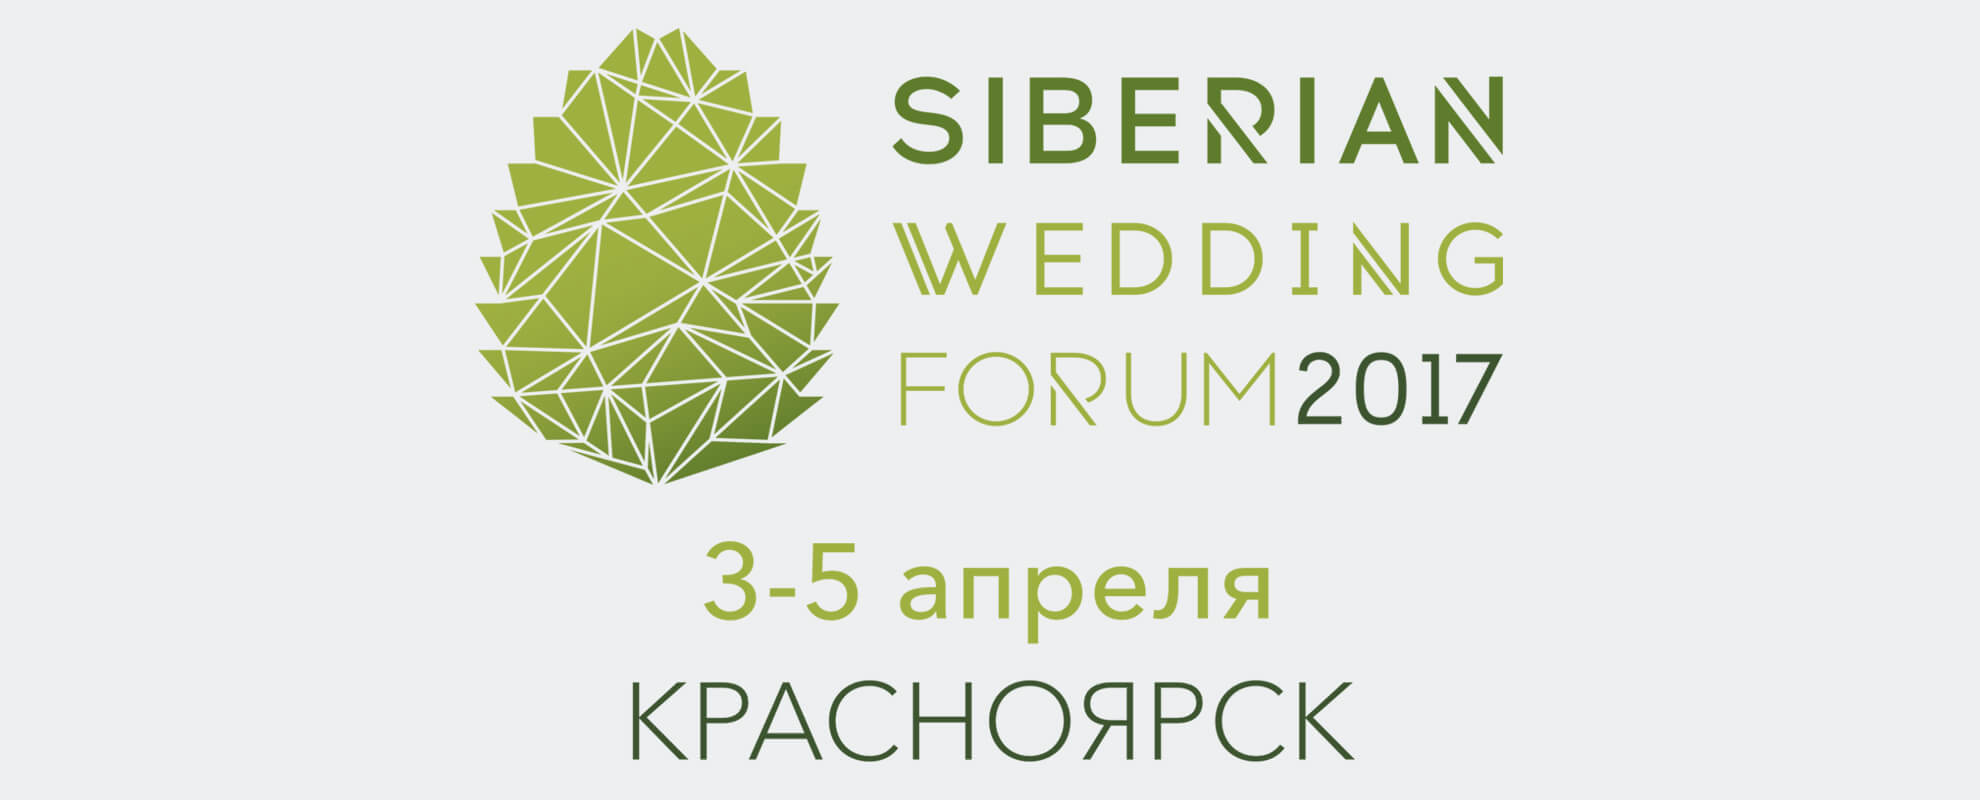 Самое масштабное событие для специалистов свадебной индустрии в Сибири в 2017 году